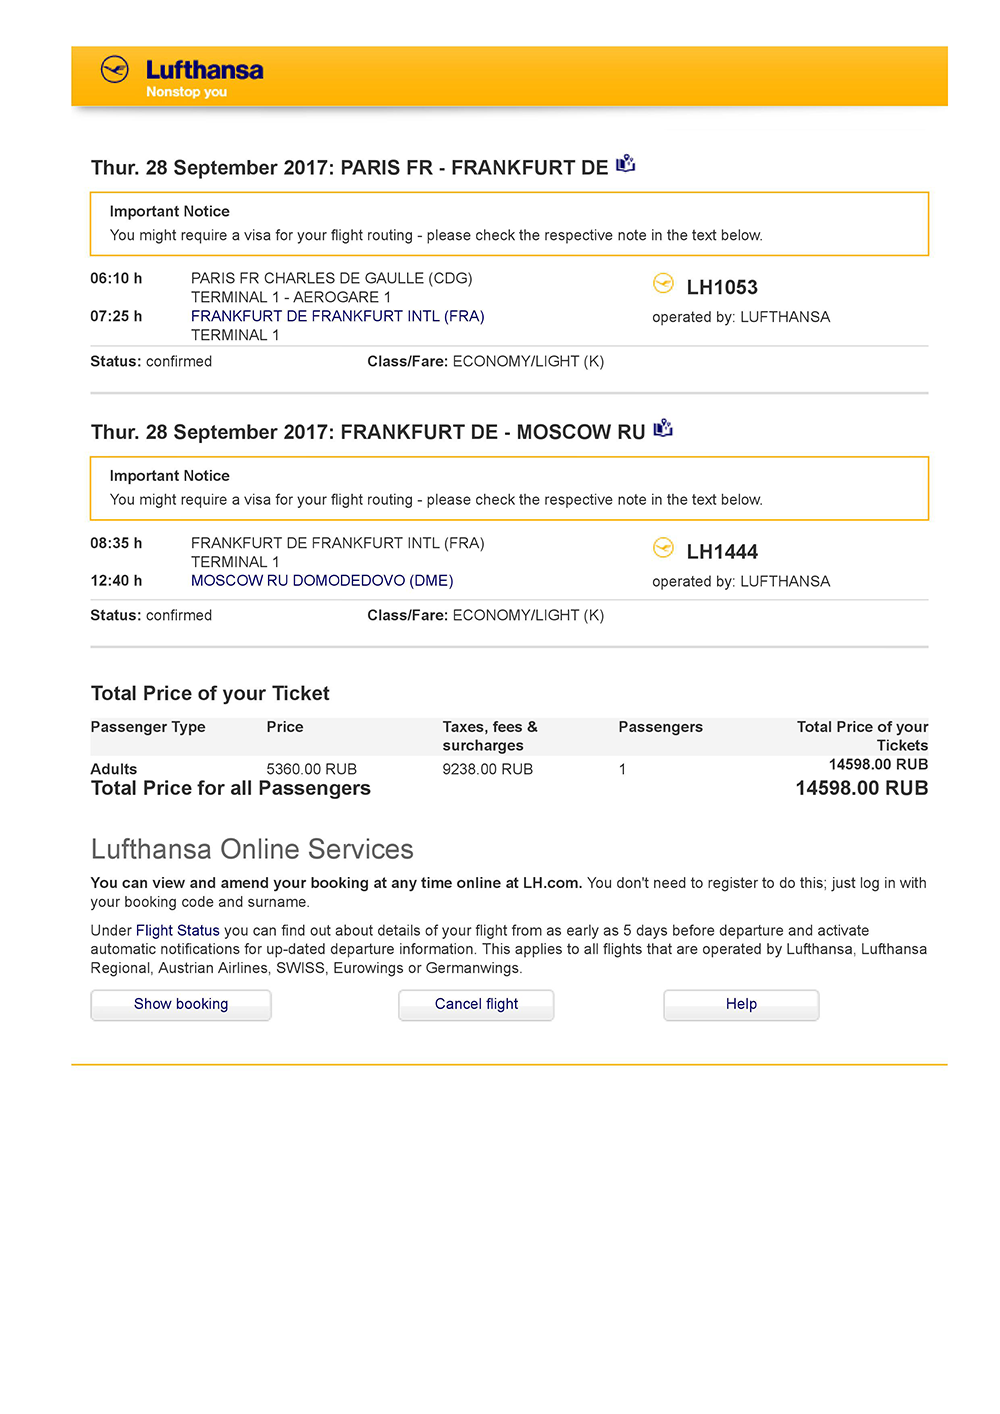 При покупке билетов «Люфтганза» не требует паспортных данных — только имя и фамилию